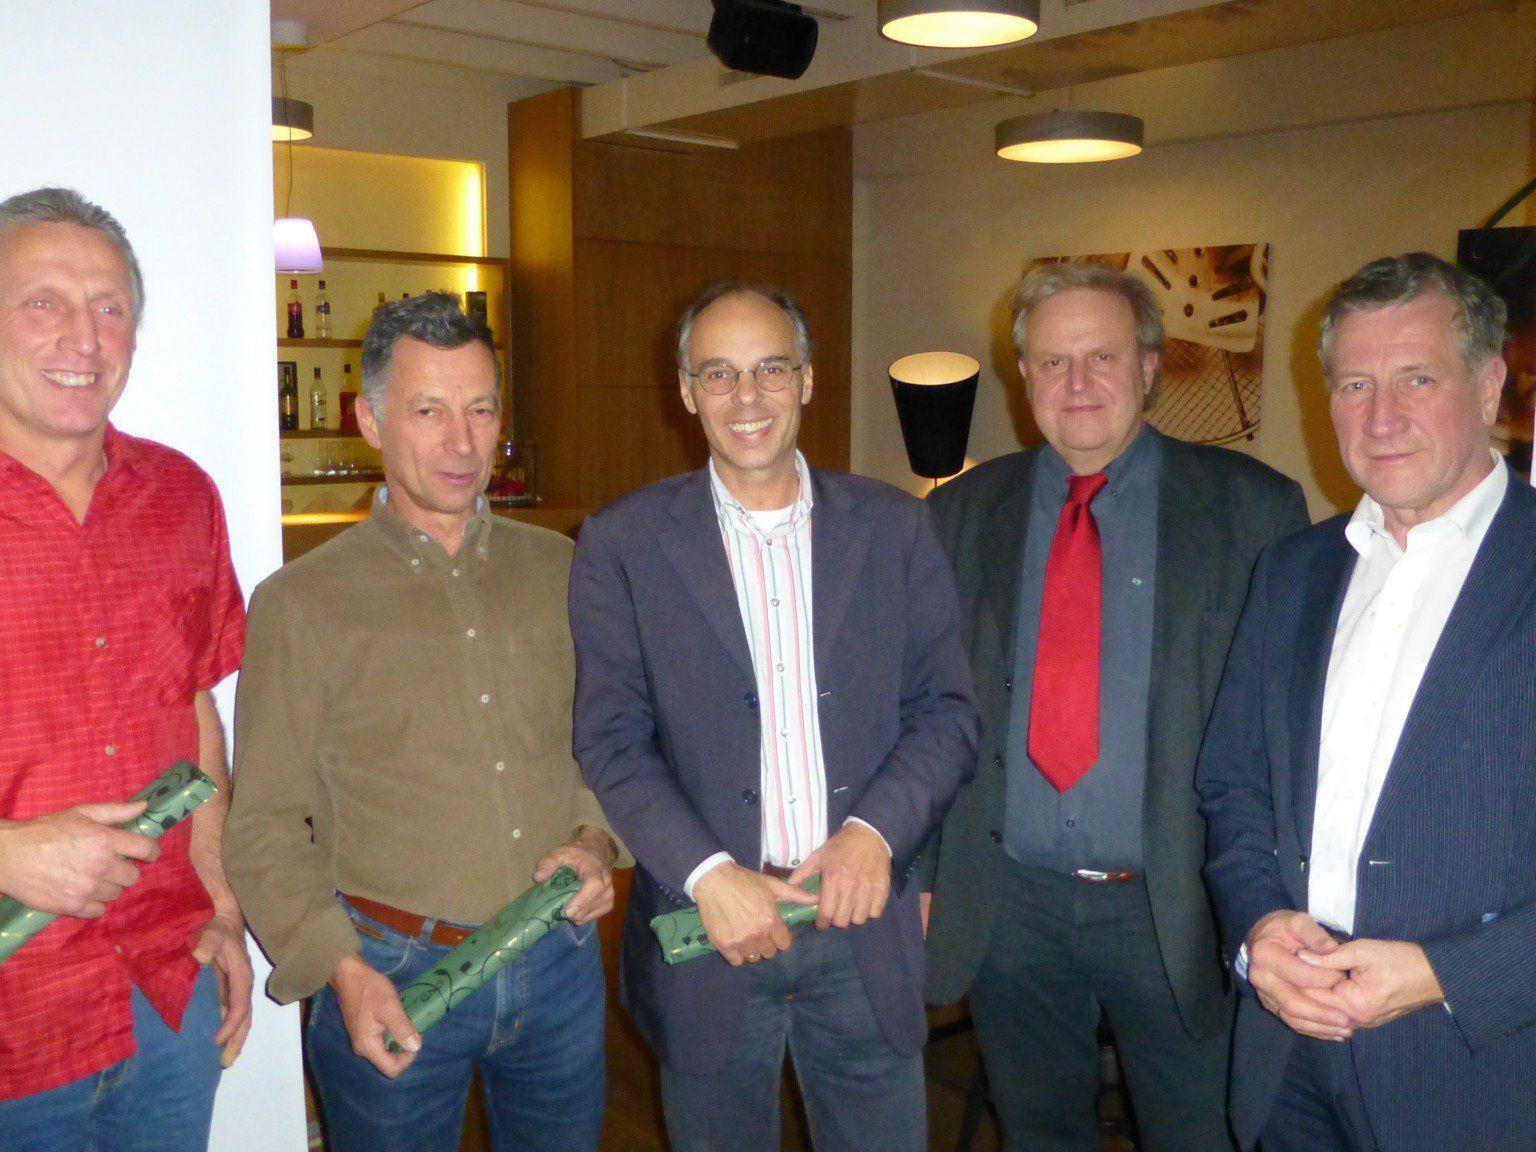 Von links nach rechts: Stefan Küng, Werner Nessler, Albert Zoderer, Eckart Drössler, Landesrat Erich Schwärzler. Nicht im Bild: Franz-Karl Meusburger.